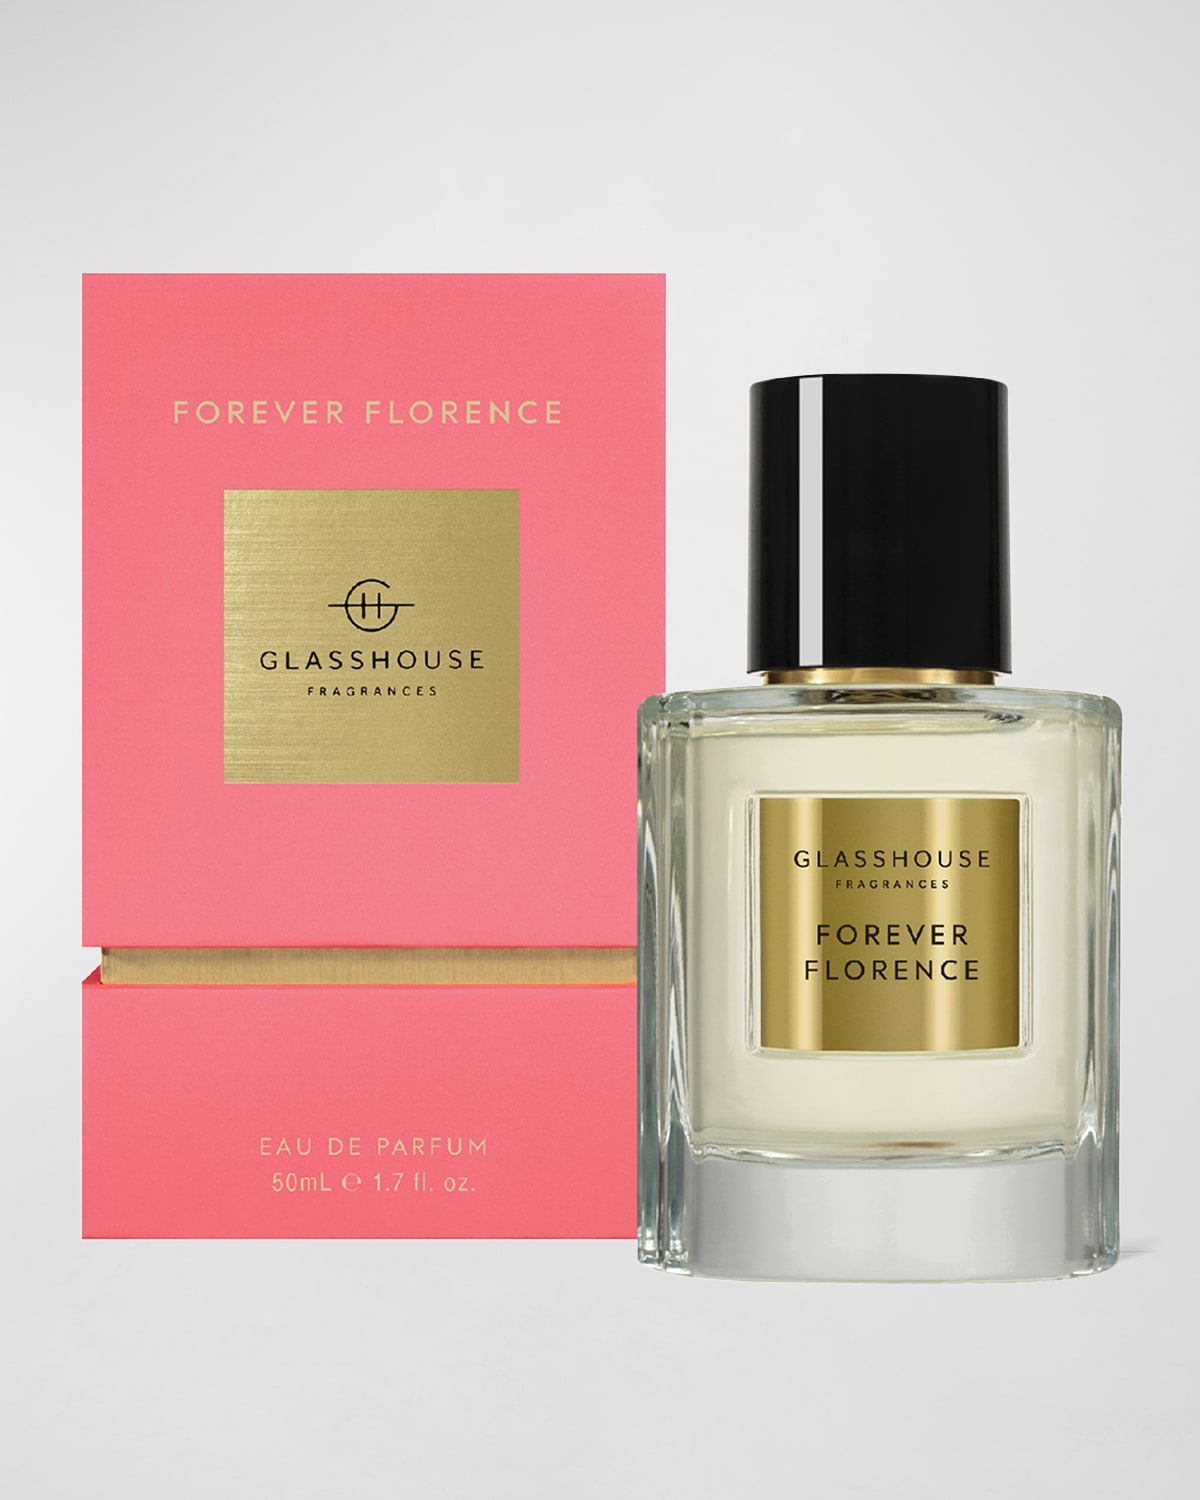 Forever Florence Eau de Parfum, 1.7 oz.